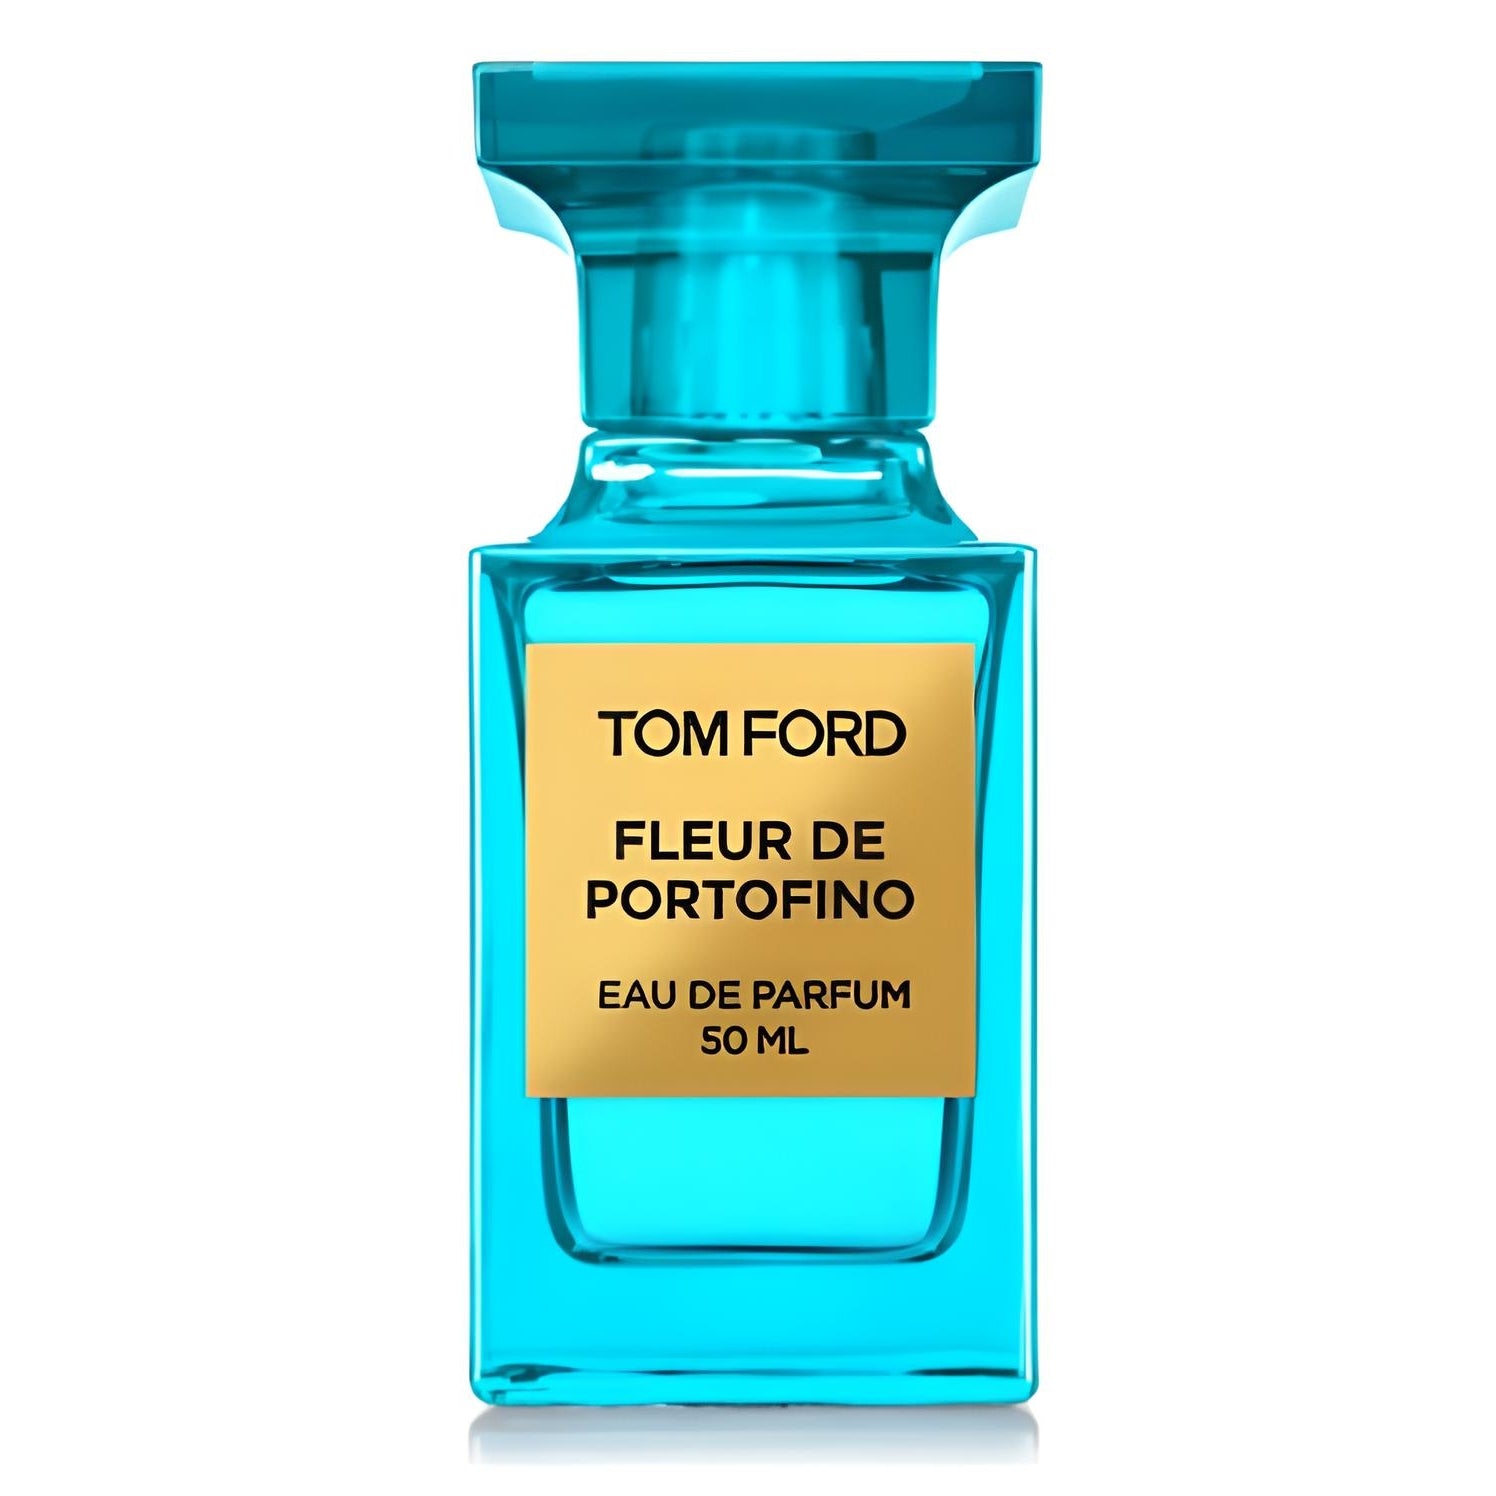 Tom Ford Fleur de Portofino Eau de Parfum Eau de Parfum TOM FORD   